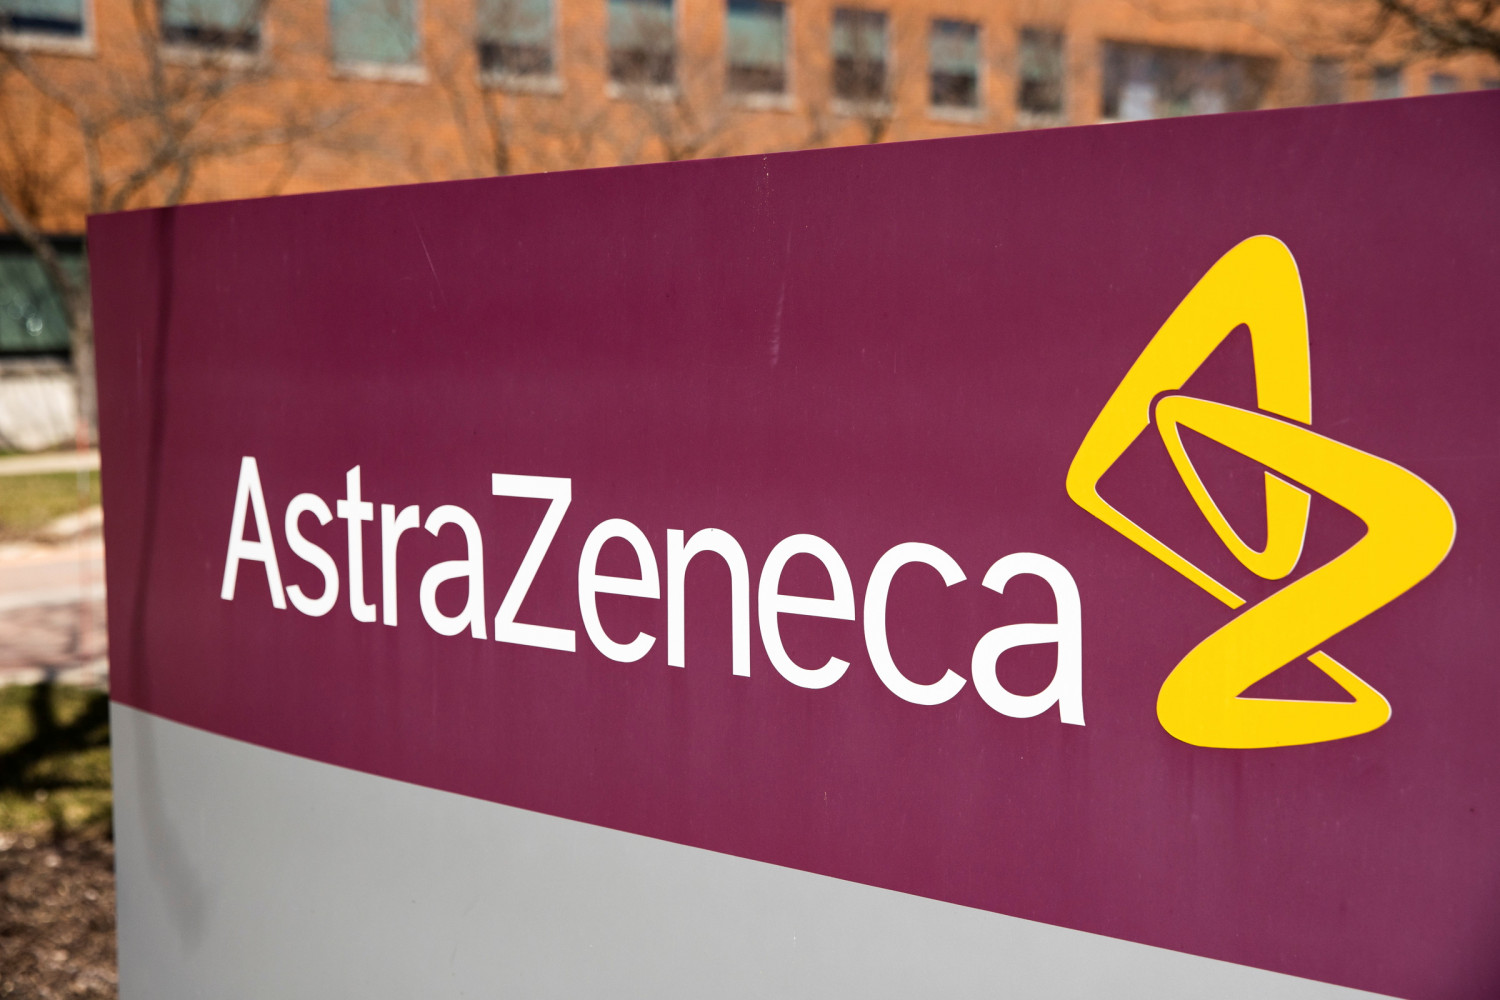 astrazeneca soumet a l ue une demande pour une usine de vaccins aux pays bas 20210411183427 